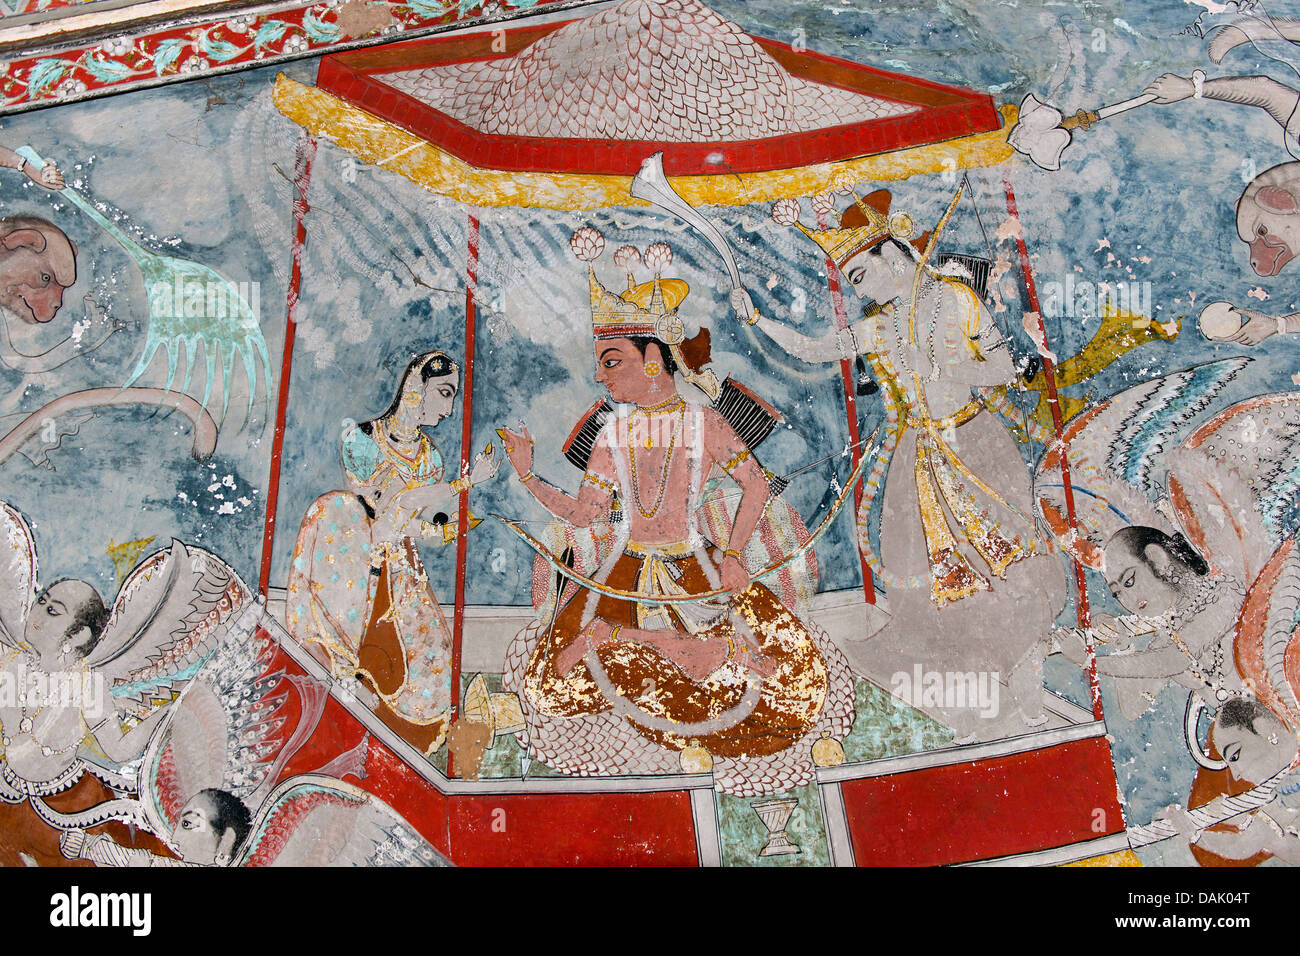 L'homme sous un baldaquin, murale ou fresque peinte avec des couleurs naturelles, Badal Mahal ou Palais de nuages, école de peinture Bundikalam Banque D'Images